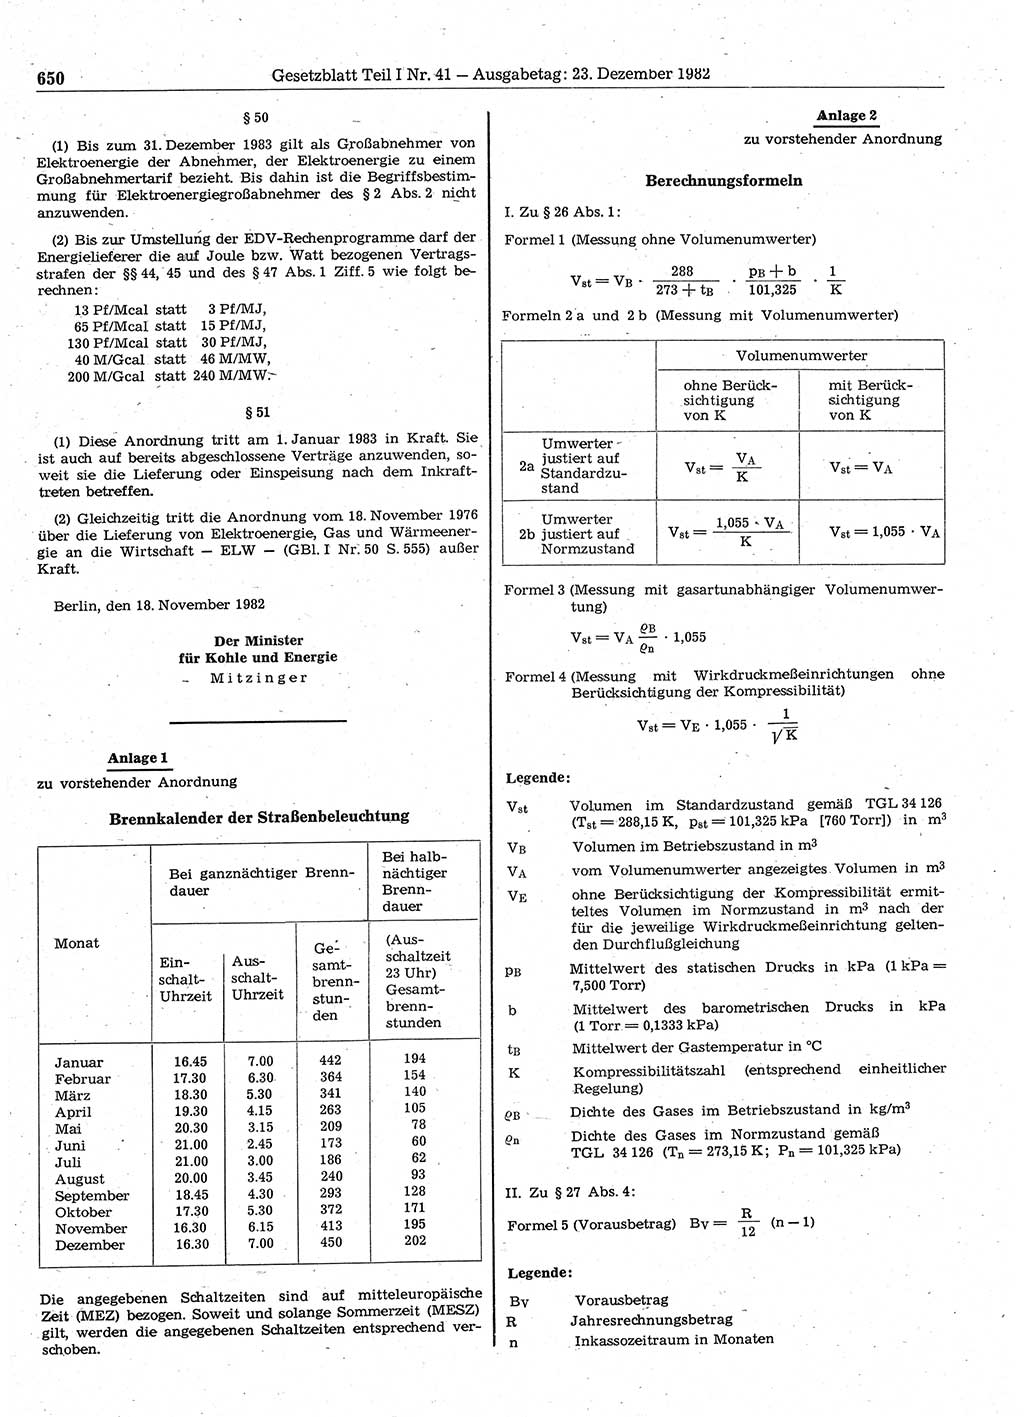 Gesetzblatt (GBl.) der Deutschen Demokratischen Republik (DDR) Teil Ⅰ 1982, Seite 650 (GBl. DDR Ⅰ 1982, S. 650)